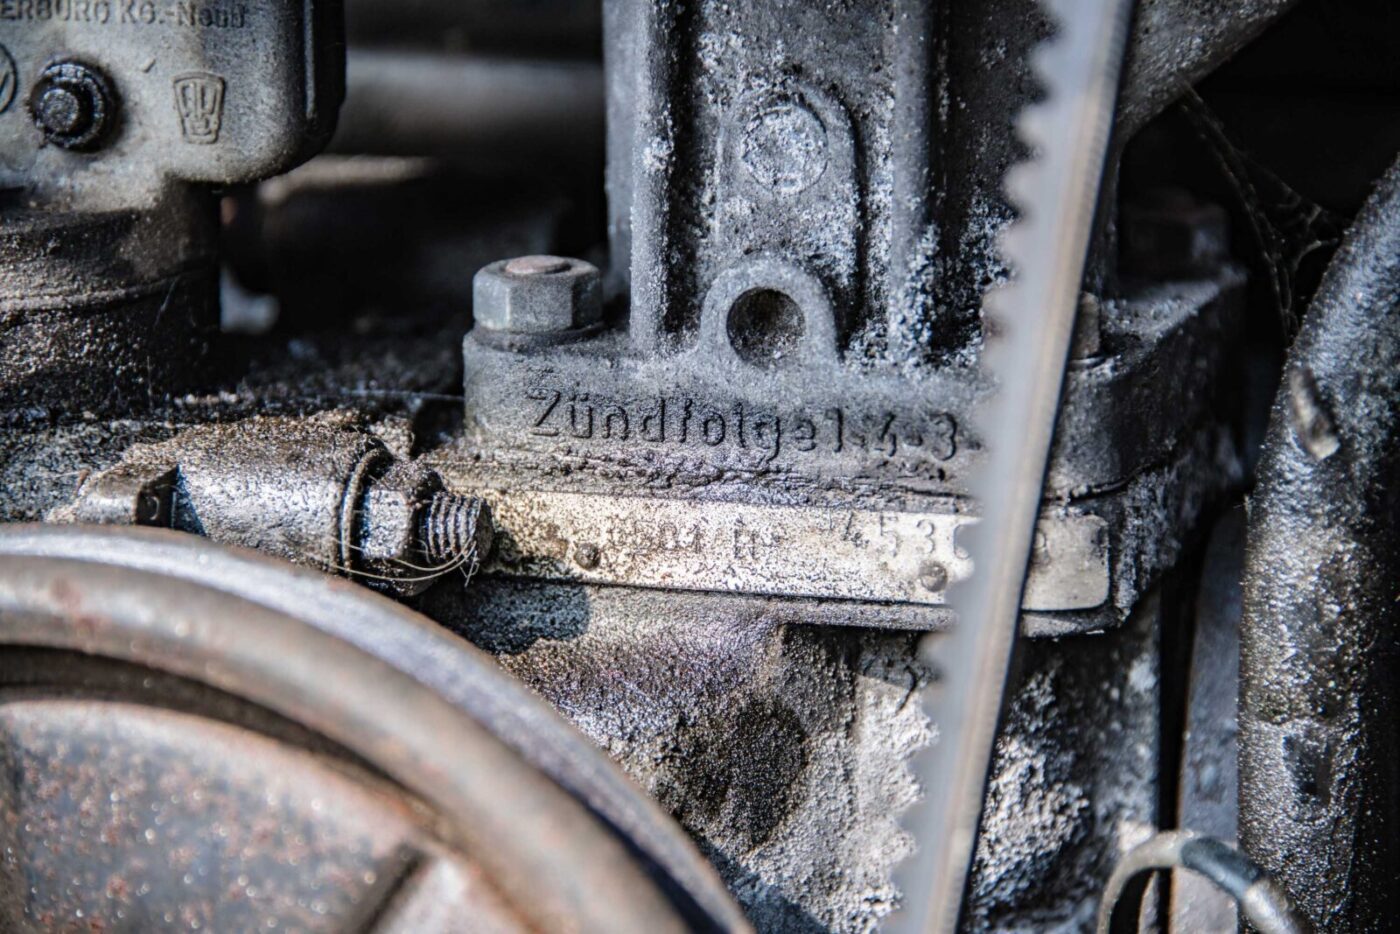 VW camper engine detail